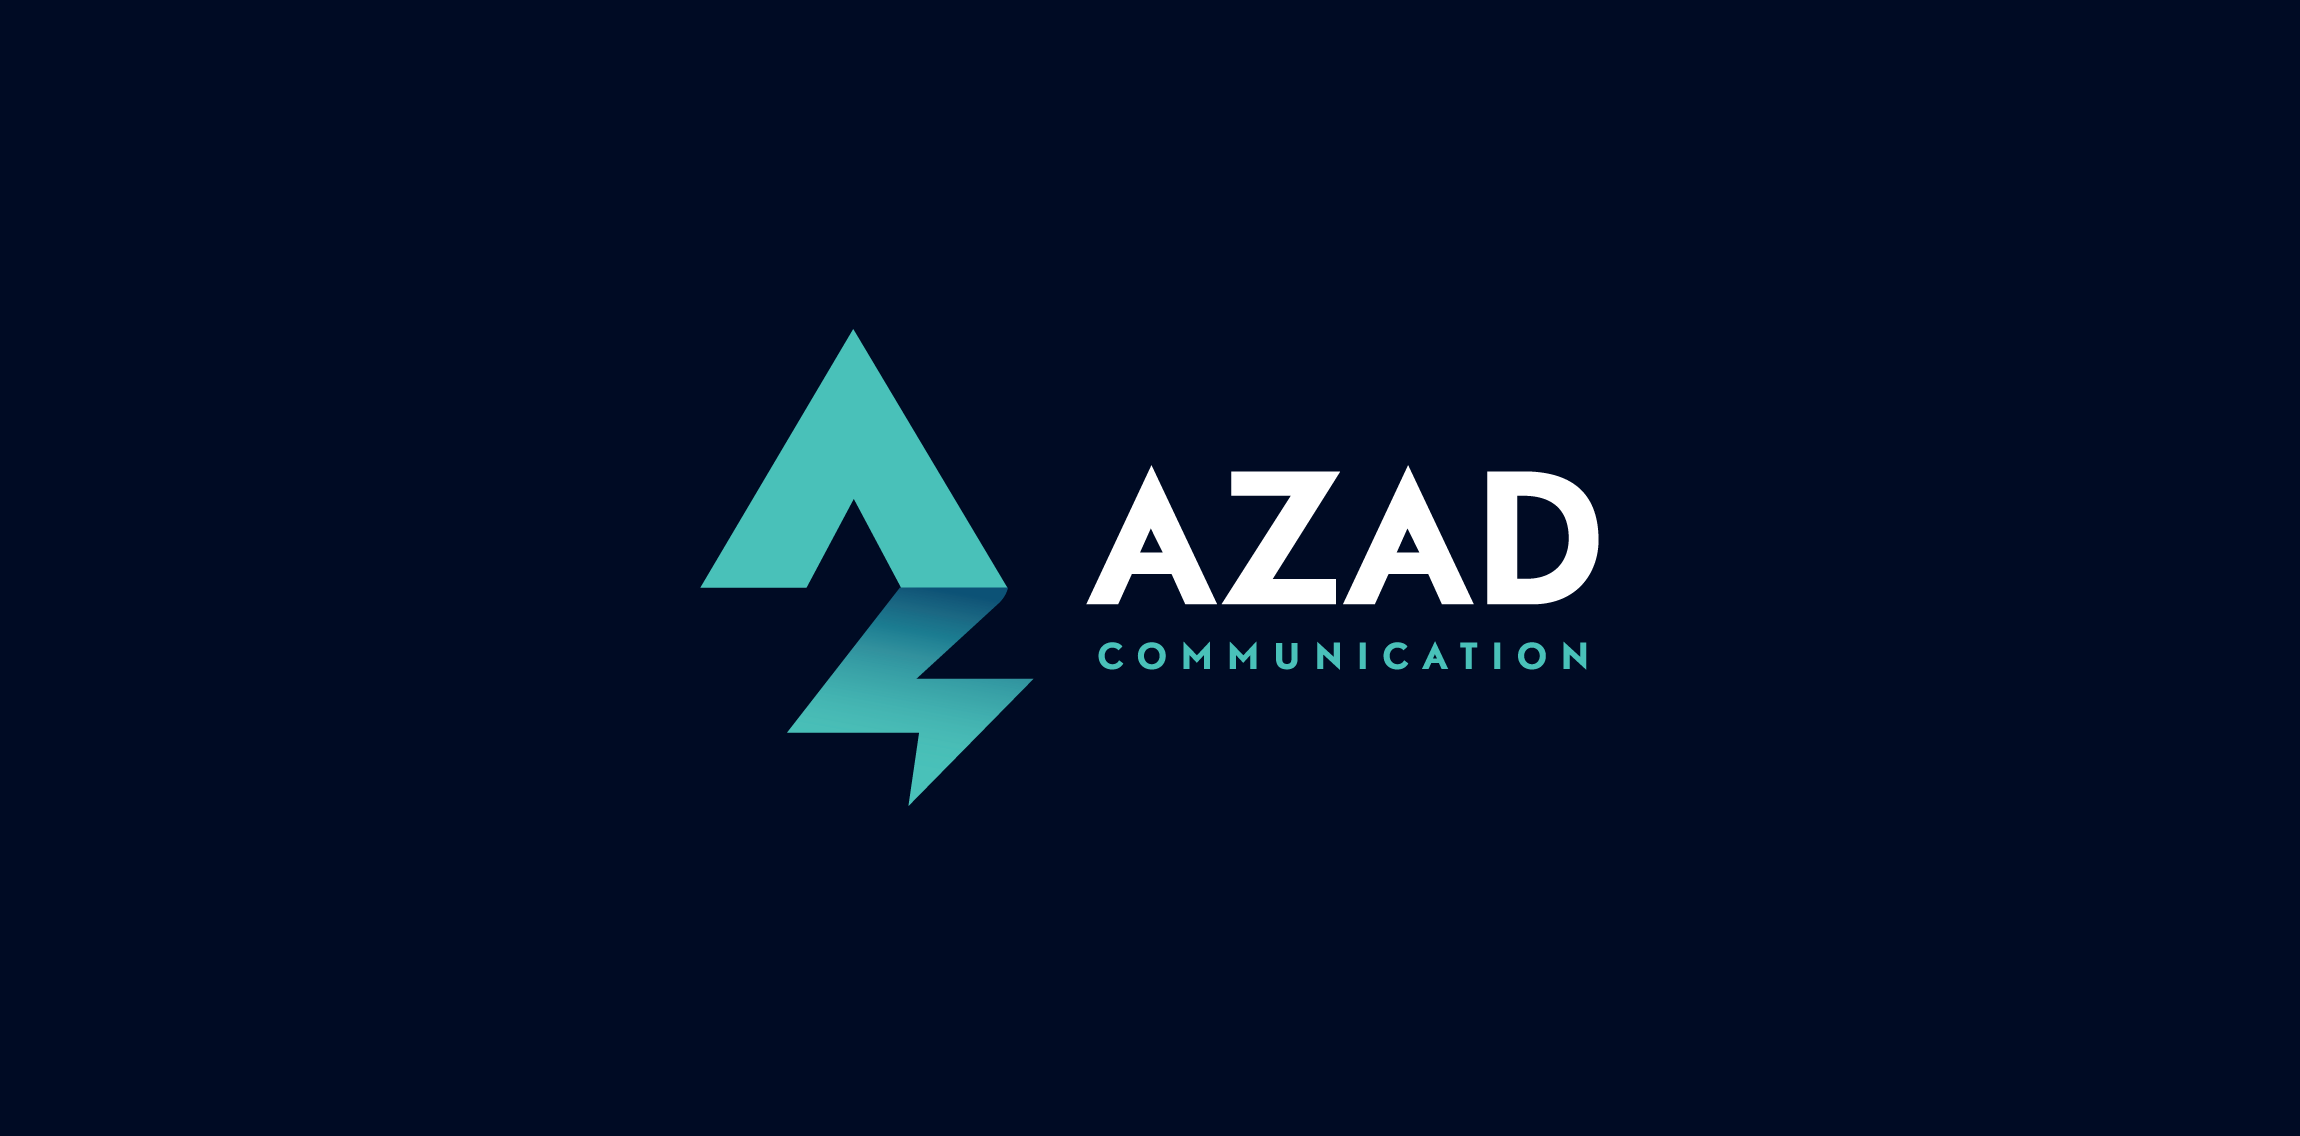 Azad Communication